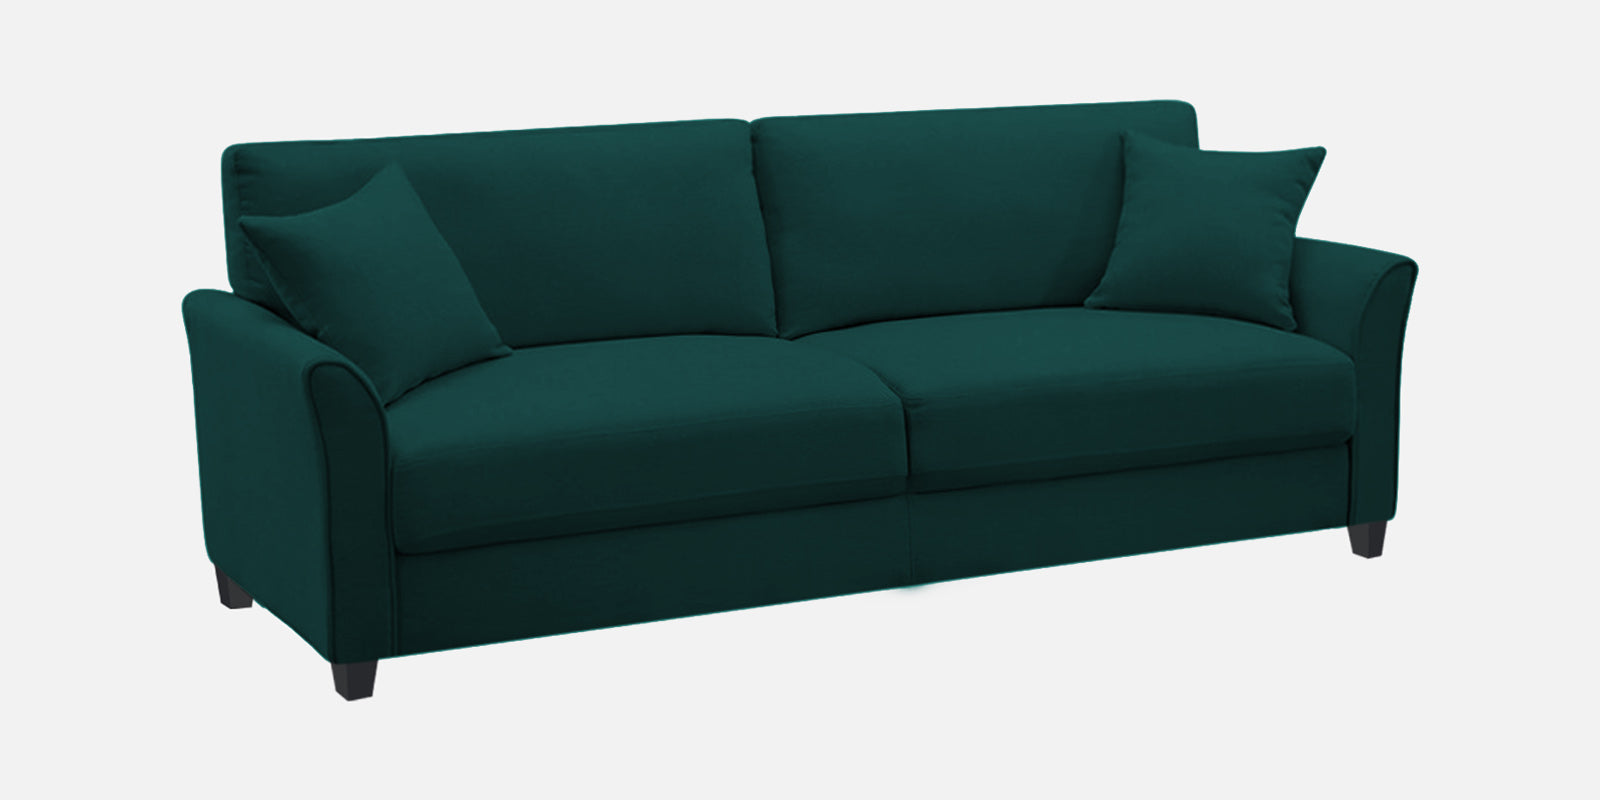 Daroo Velvet 3 Seater Sofa in Forest Green Colour